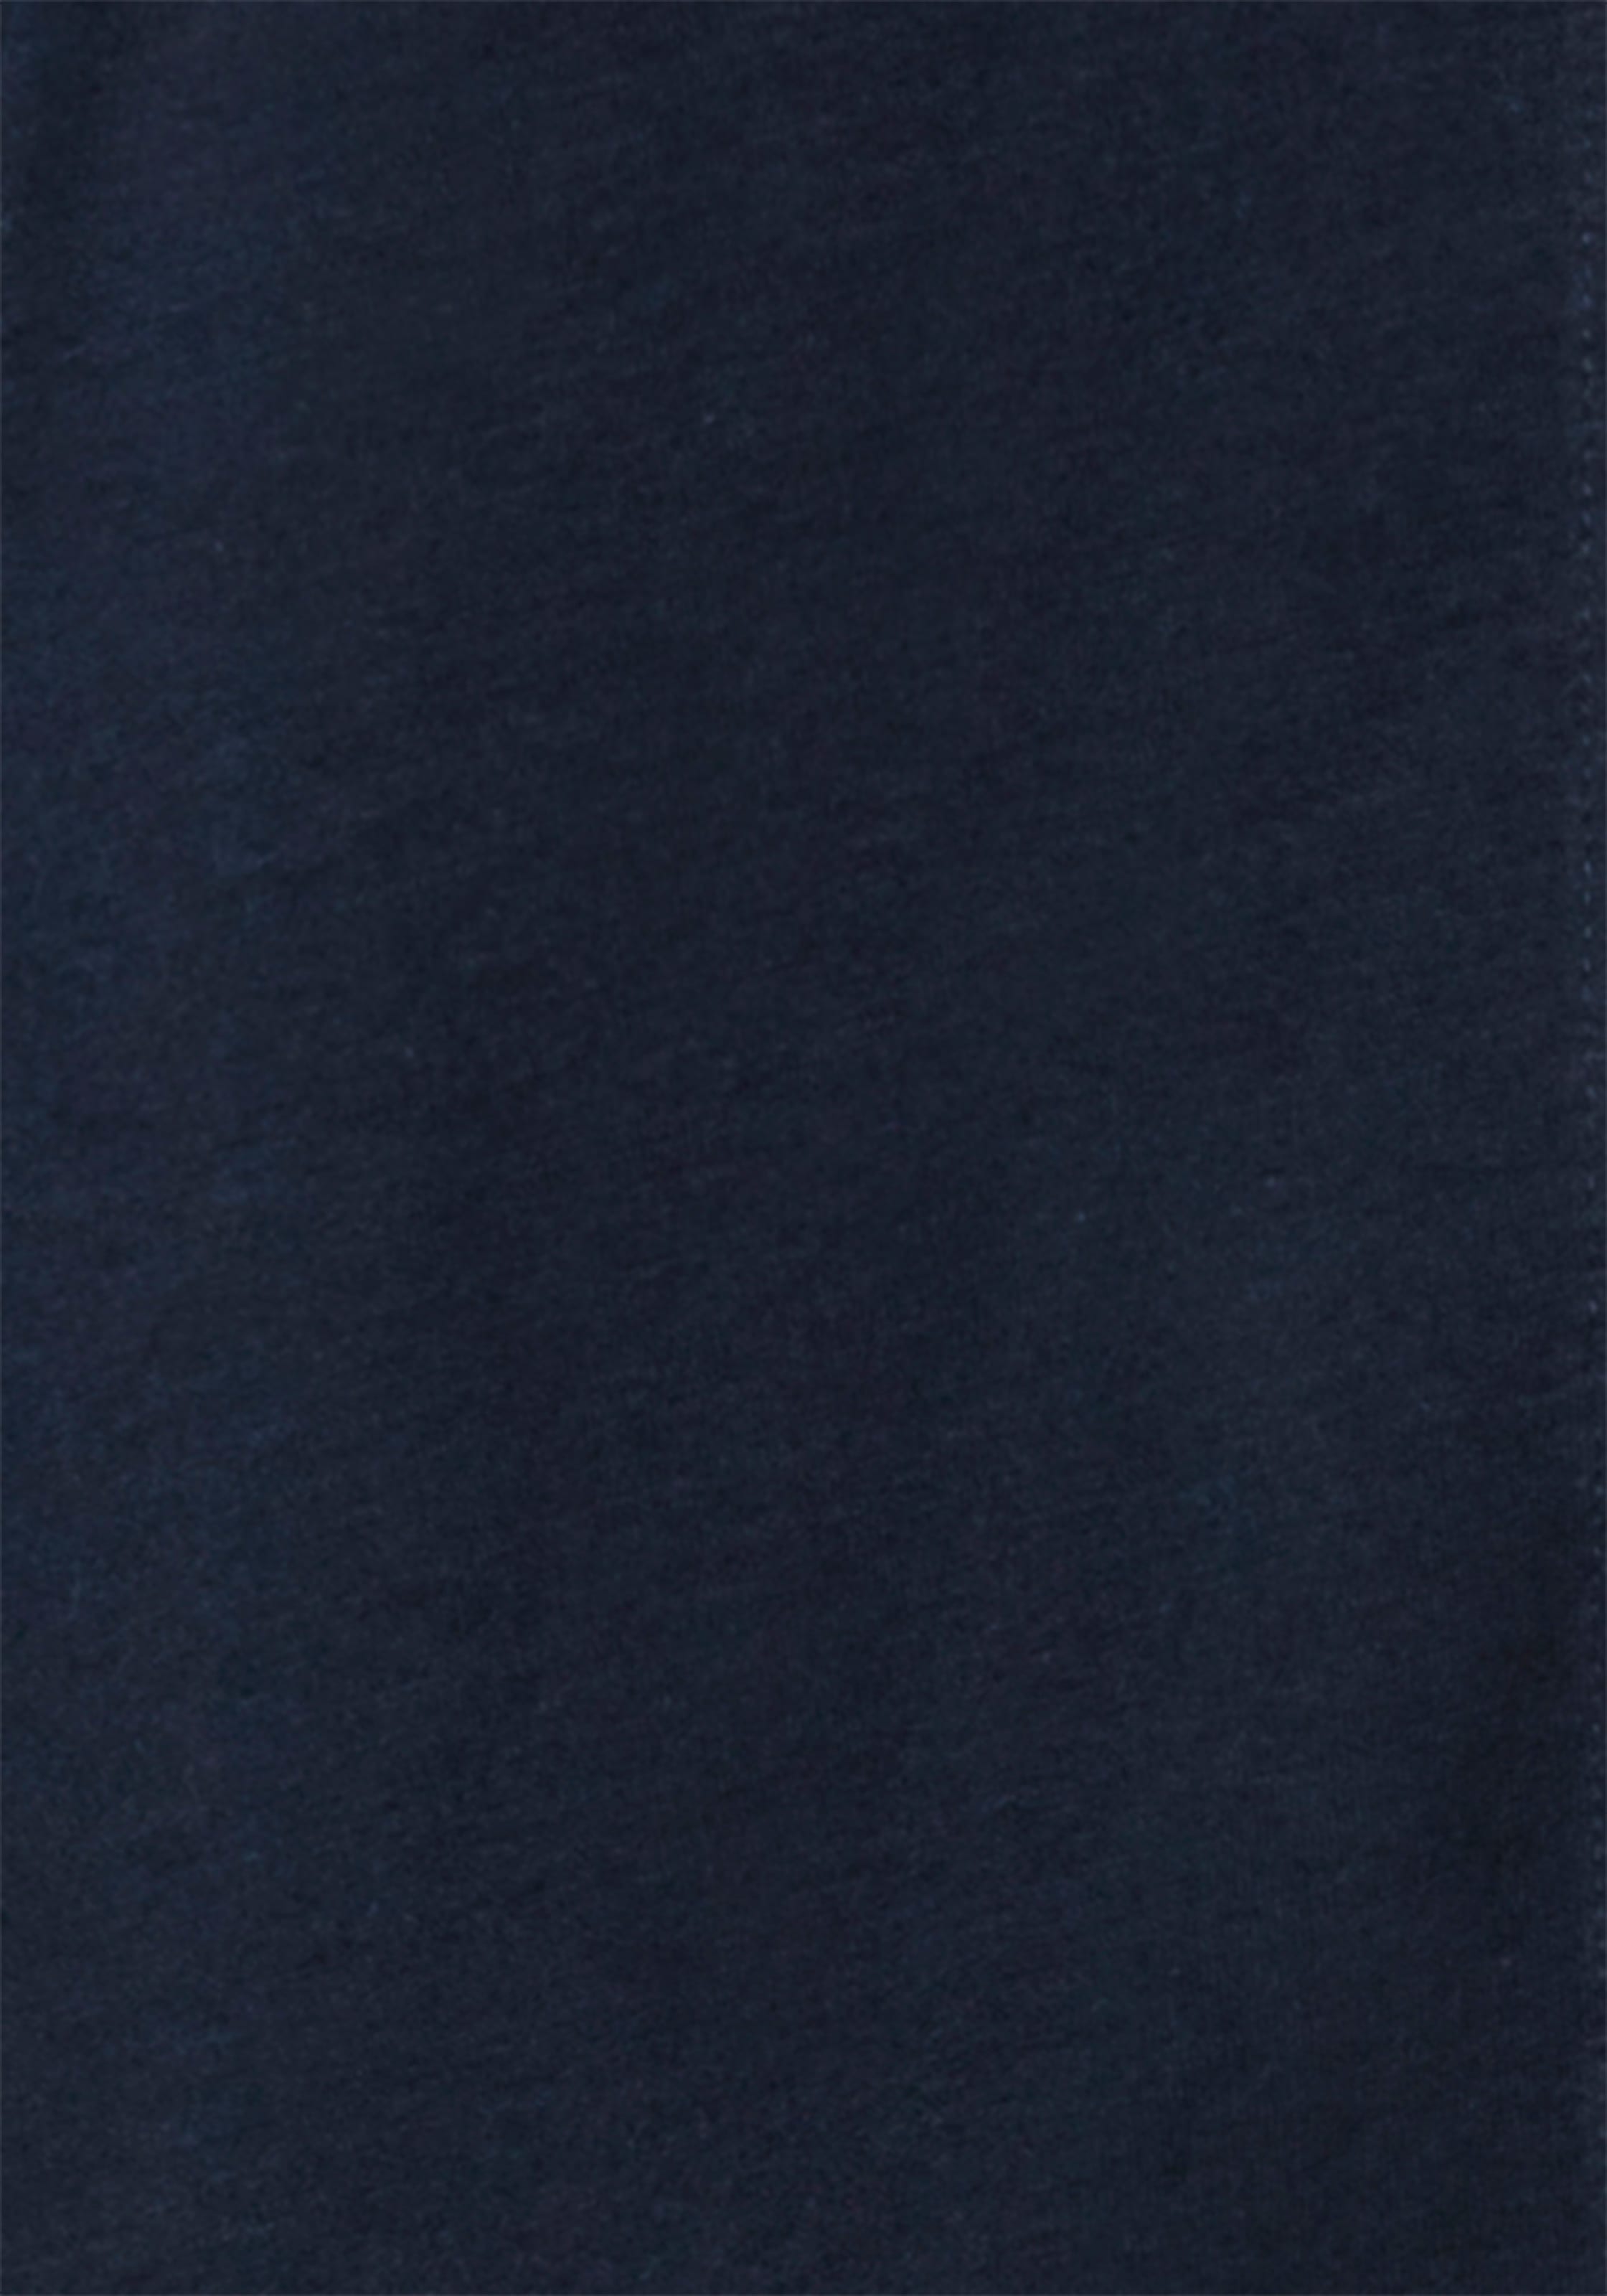 s.Oliver Pyjama, (2 tlg.), im klassischen Streifen-design